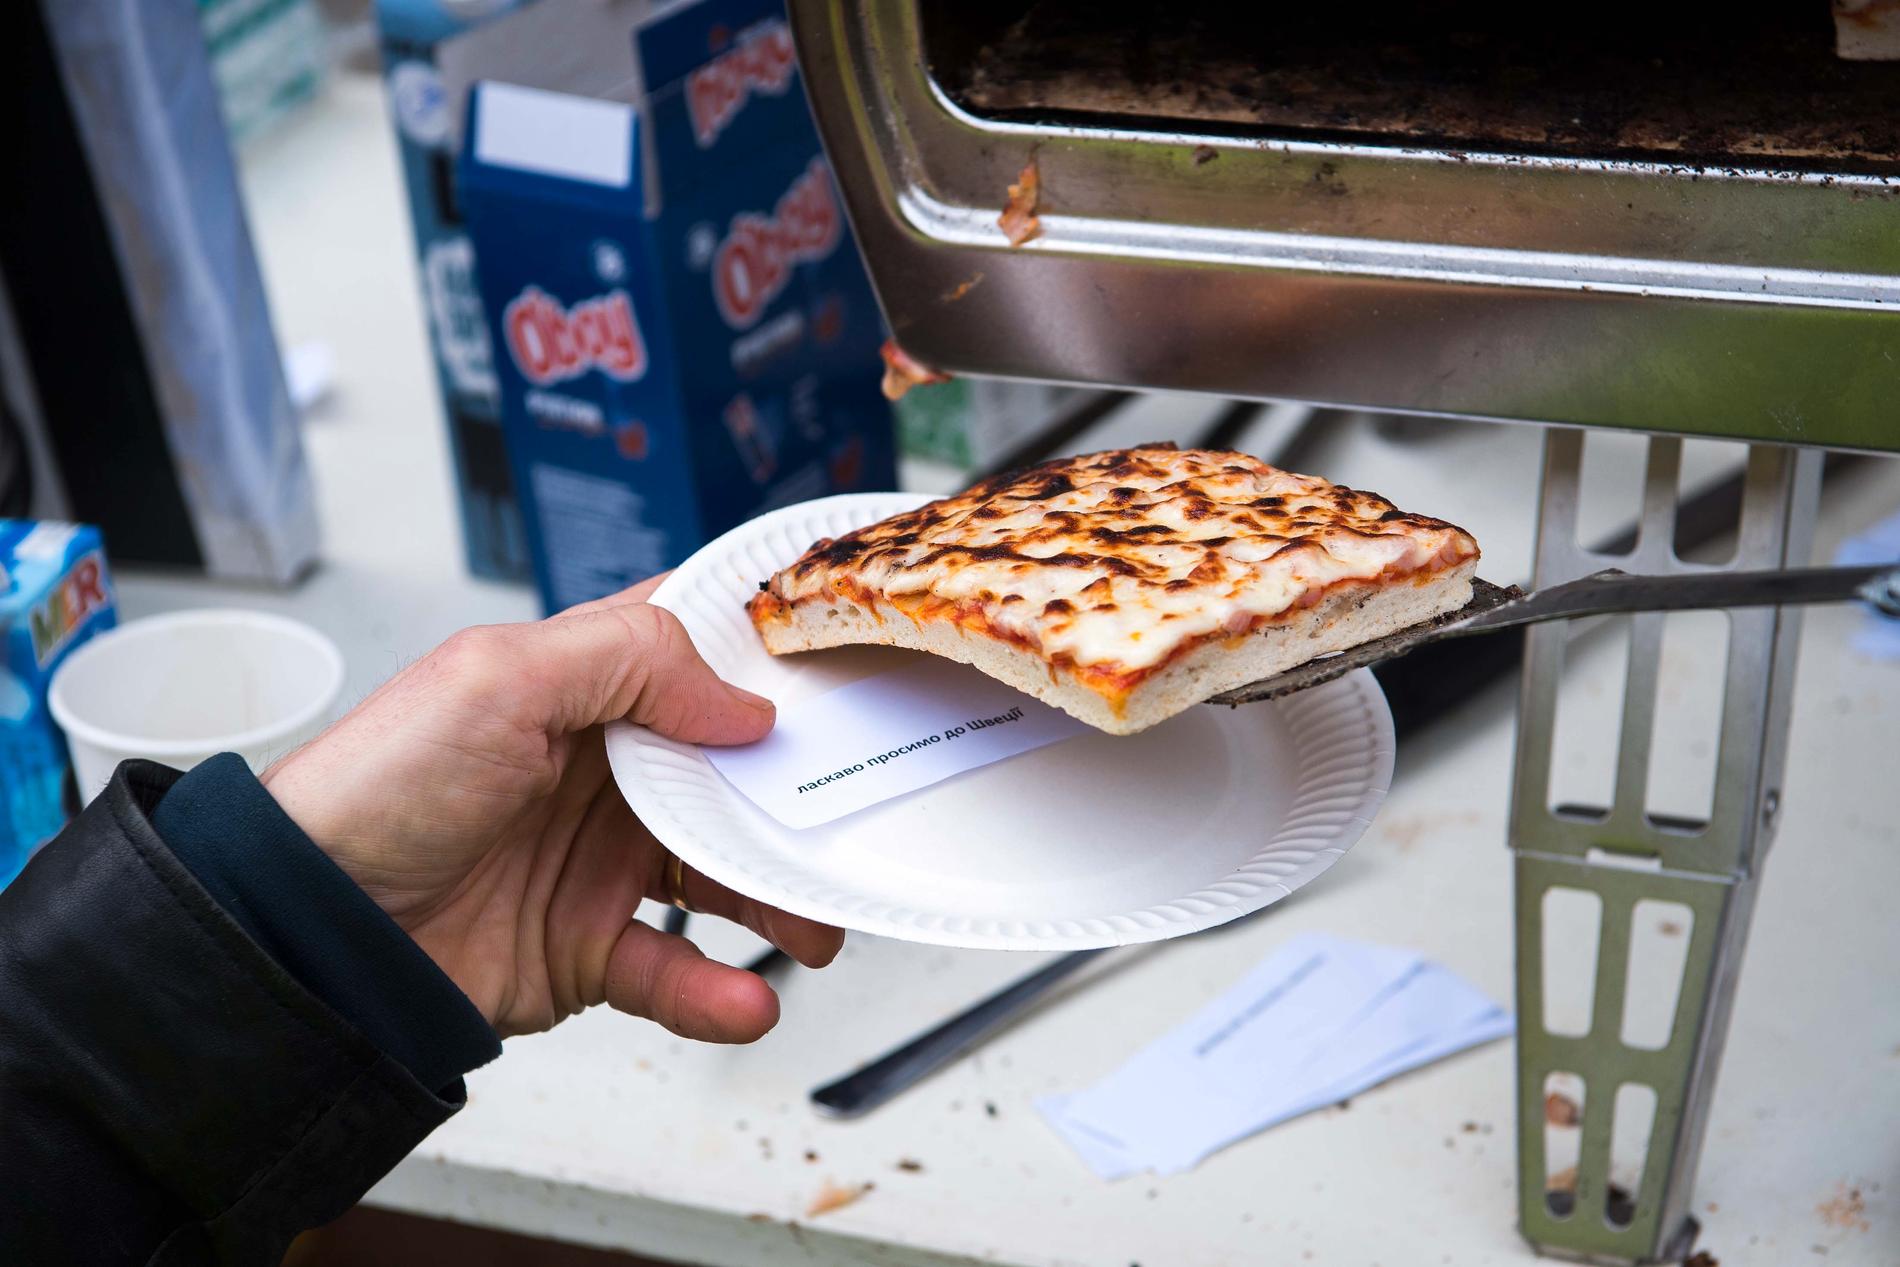 Under varje pizza lägger Niklas en lapp där det på ukrainska står ”Välkommen till Sverige”